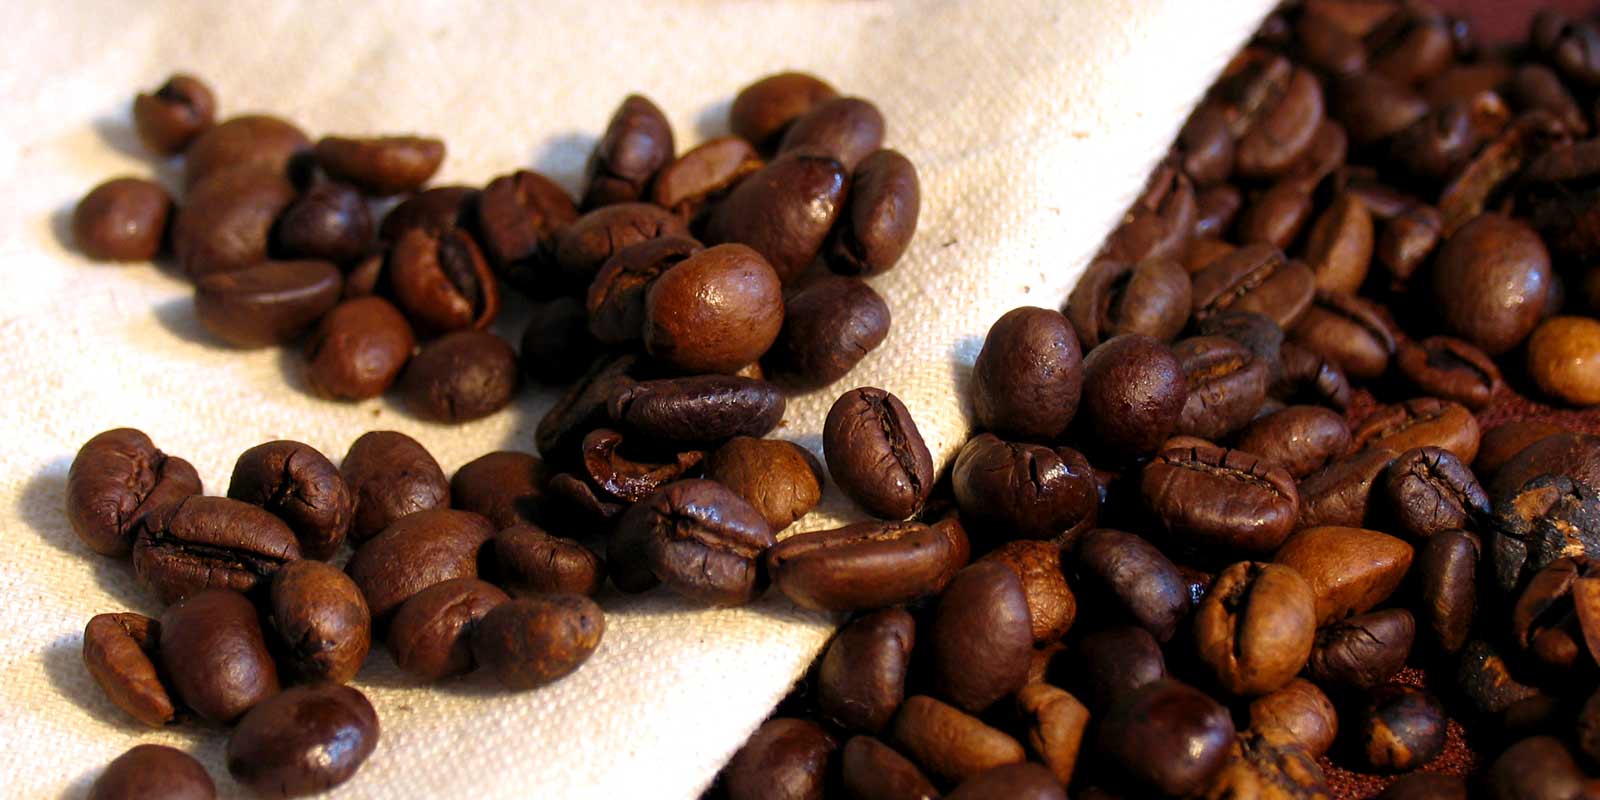 Kafa / espresso Ovdje cete pronaci razlicite vrste kafe posebne vrste.